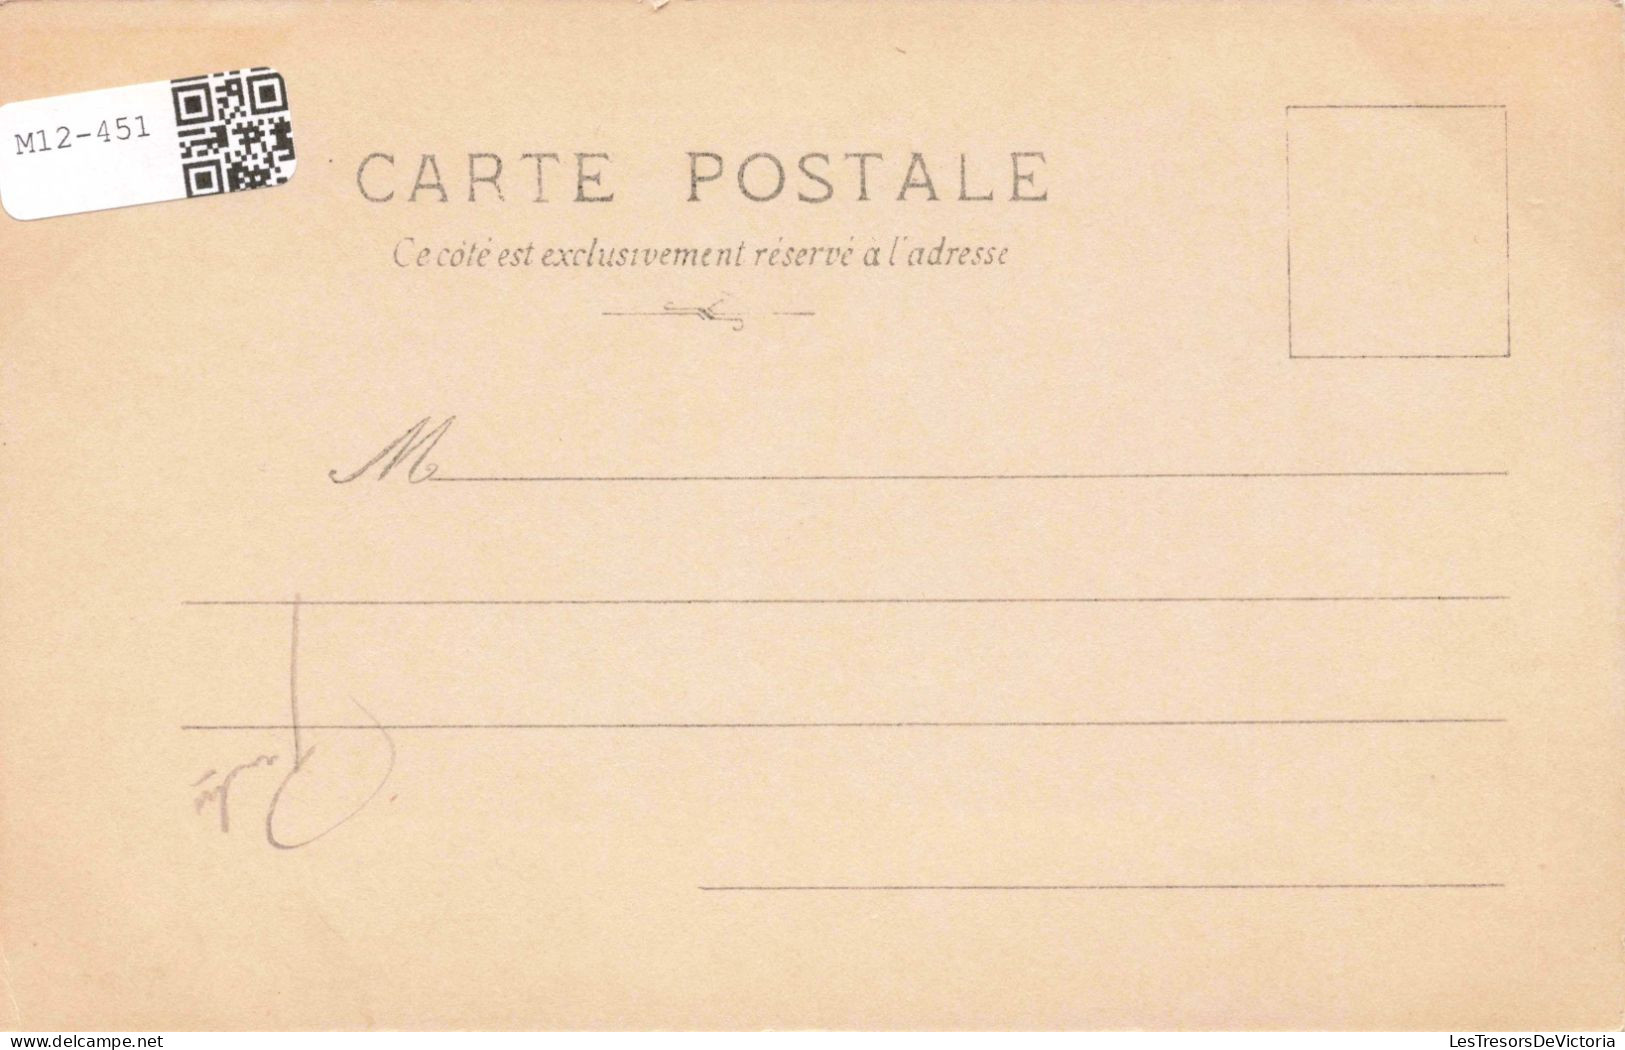 HISTOIRE - MN Ponce Camus - Napoléon A Osterode Accorde Des Grâces Aux Habitants - Carte Postale Ancienne - Geschichte